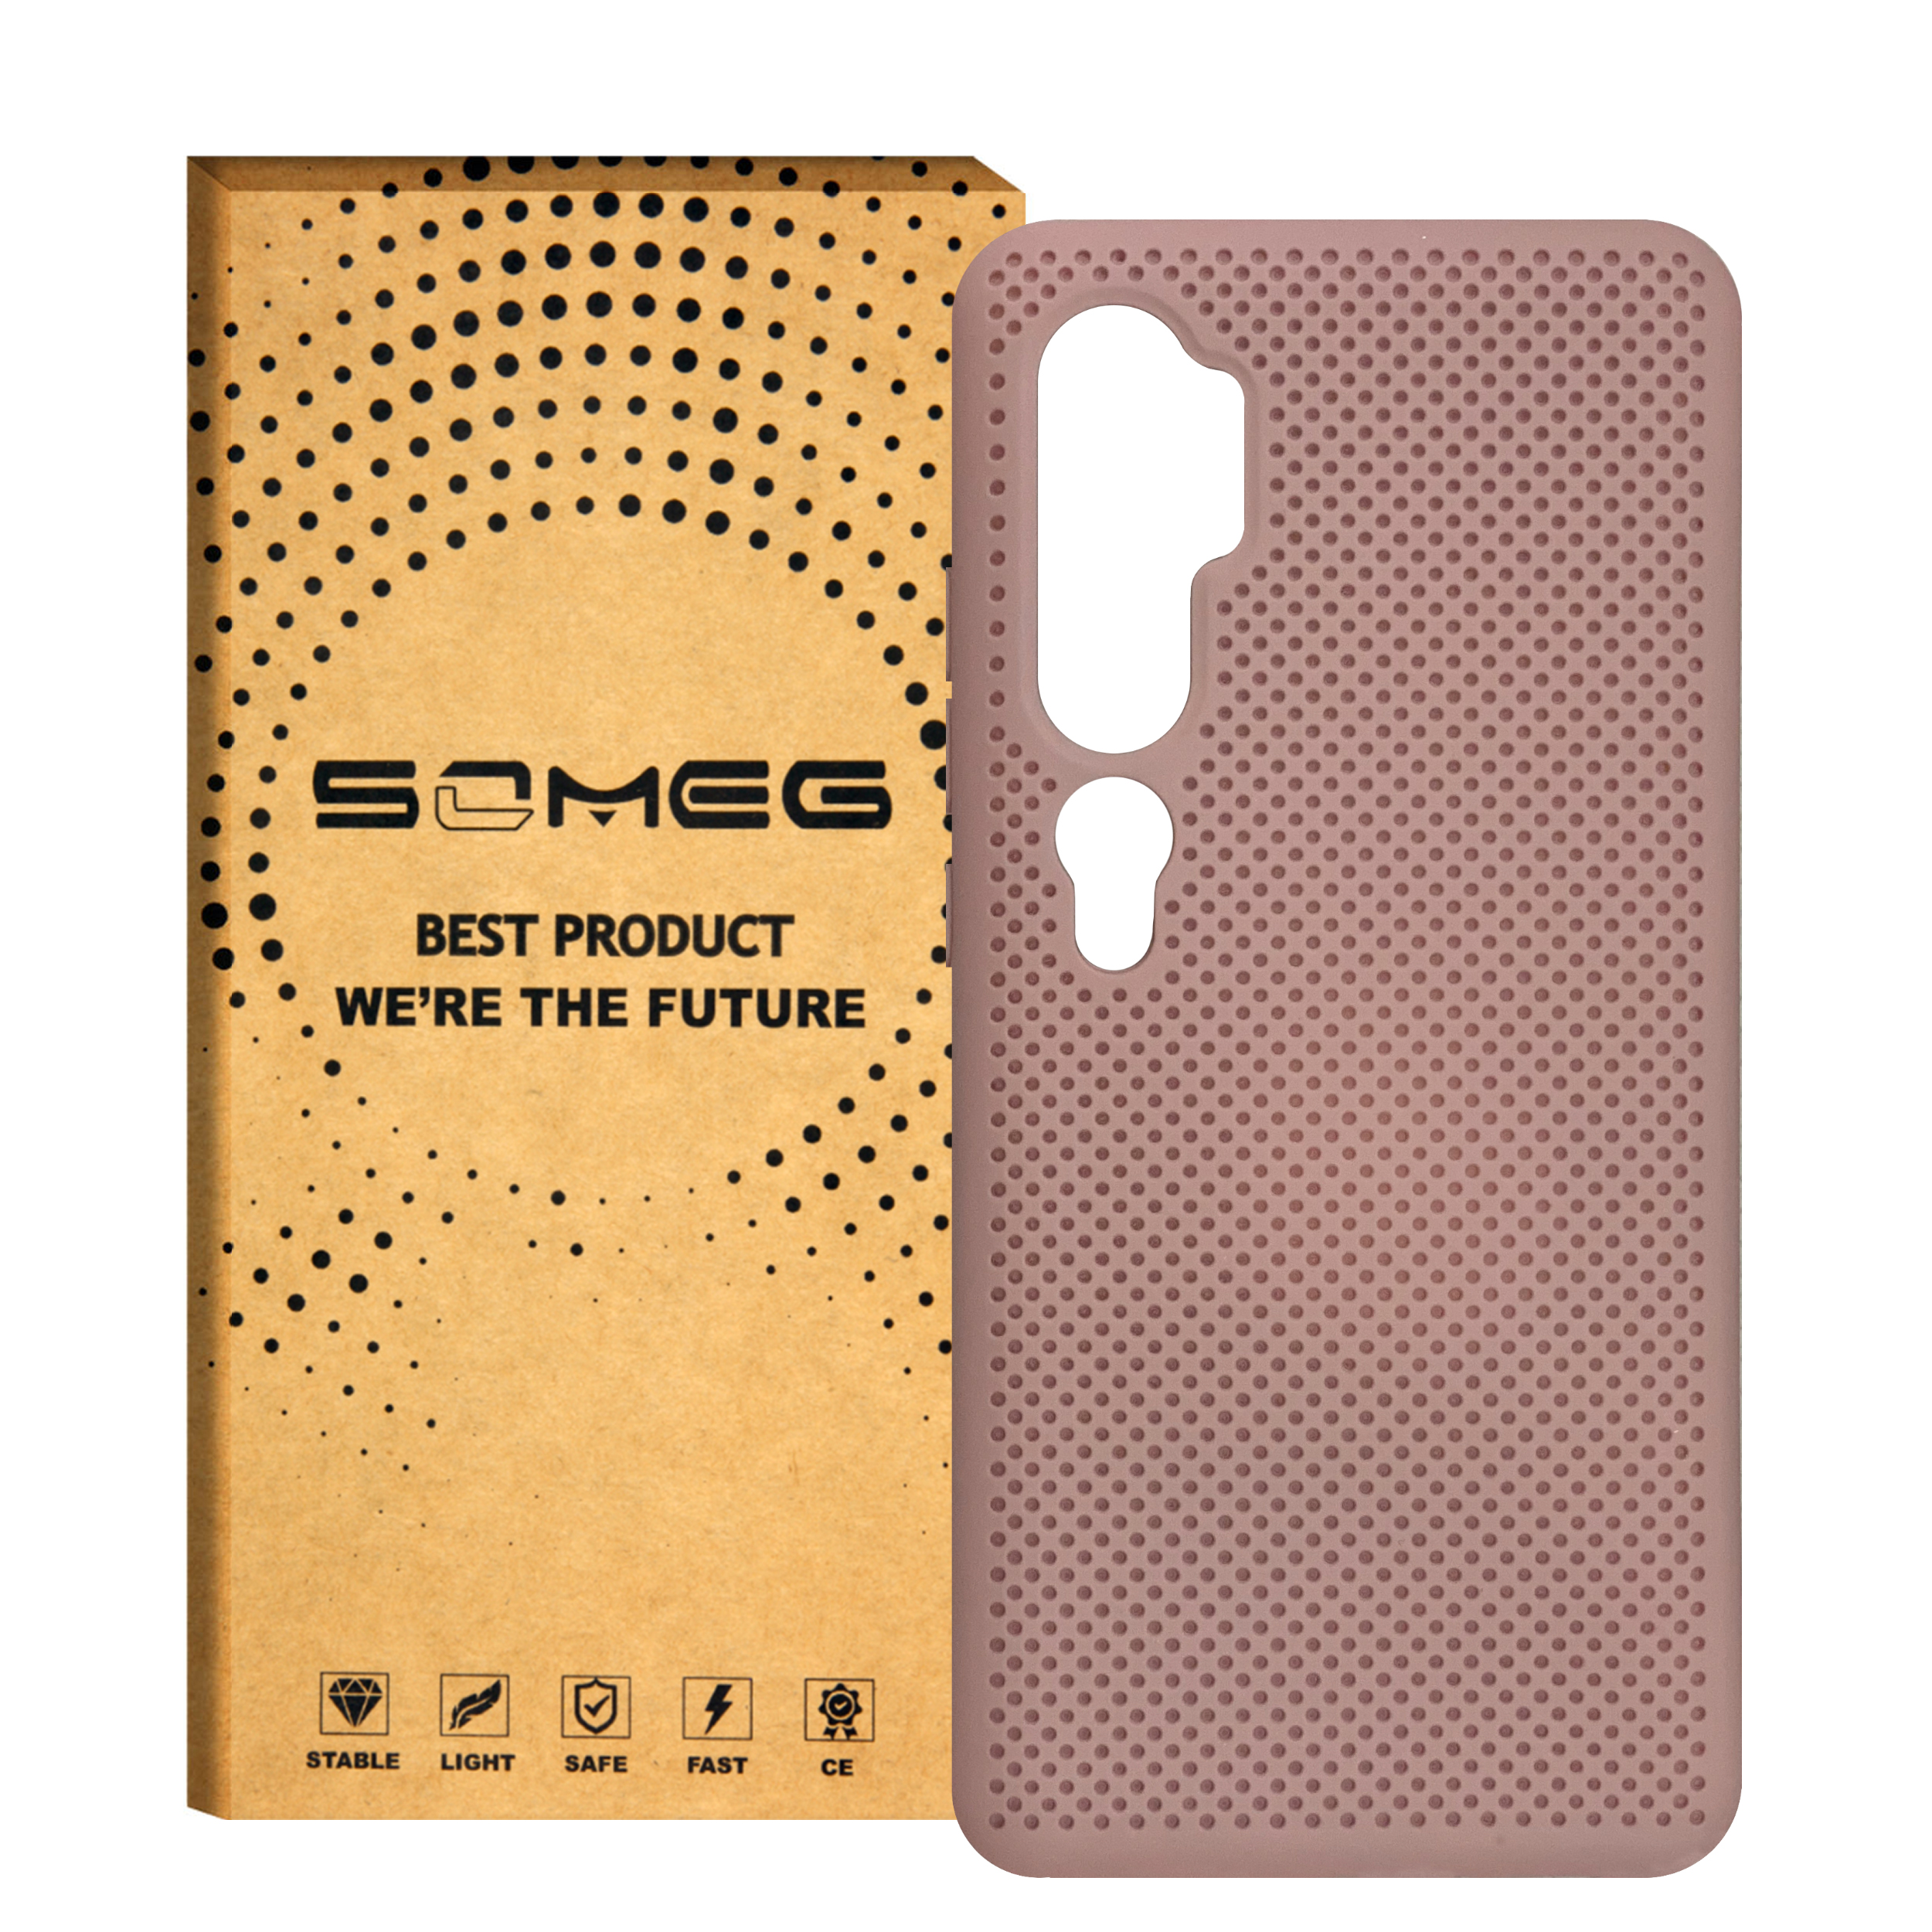 کاور سومگ مدل SMG-Needle مناسب برای گوشی موبایل  شیائومی شیائومی Redmi Note 10/ Redmi Note 10Pro